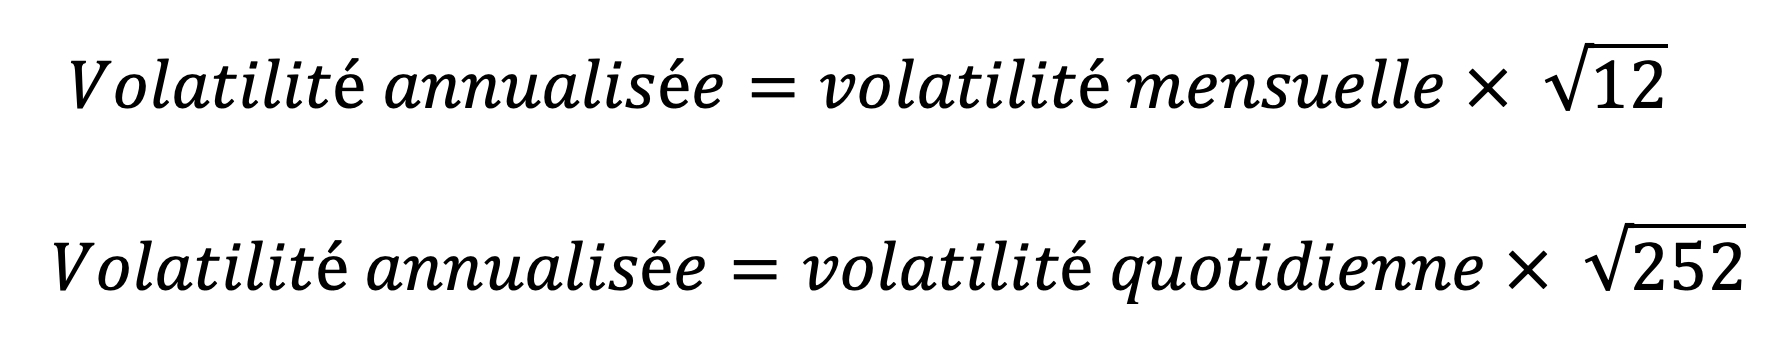 volatilité définition